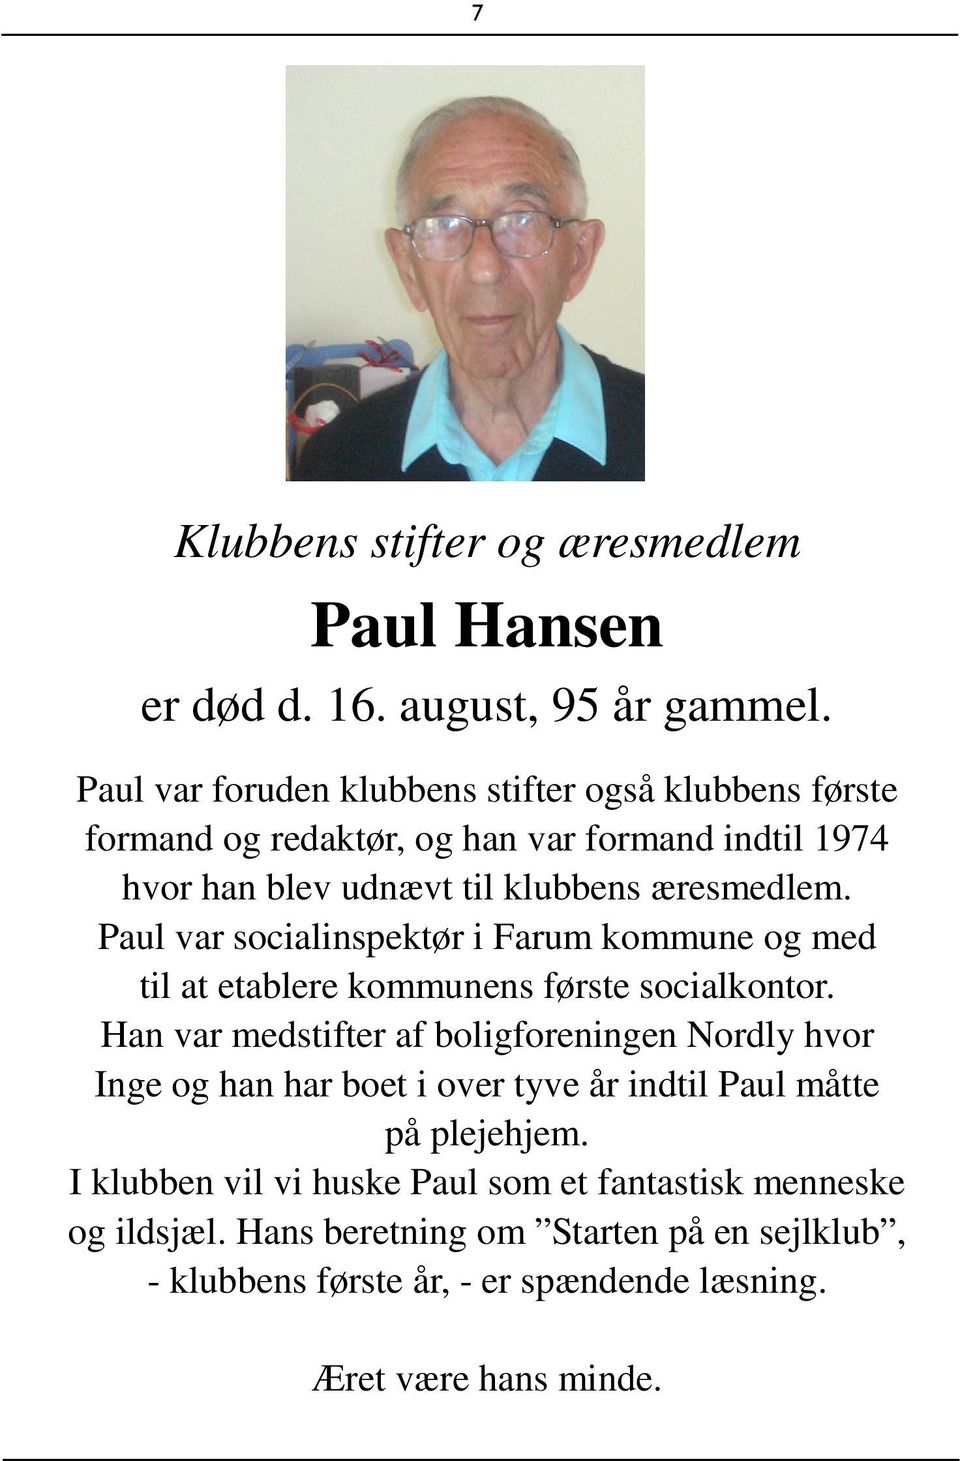 Paul var socialinspektør i Farum kommune og med til at etablere kommunens første socialkontor.